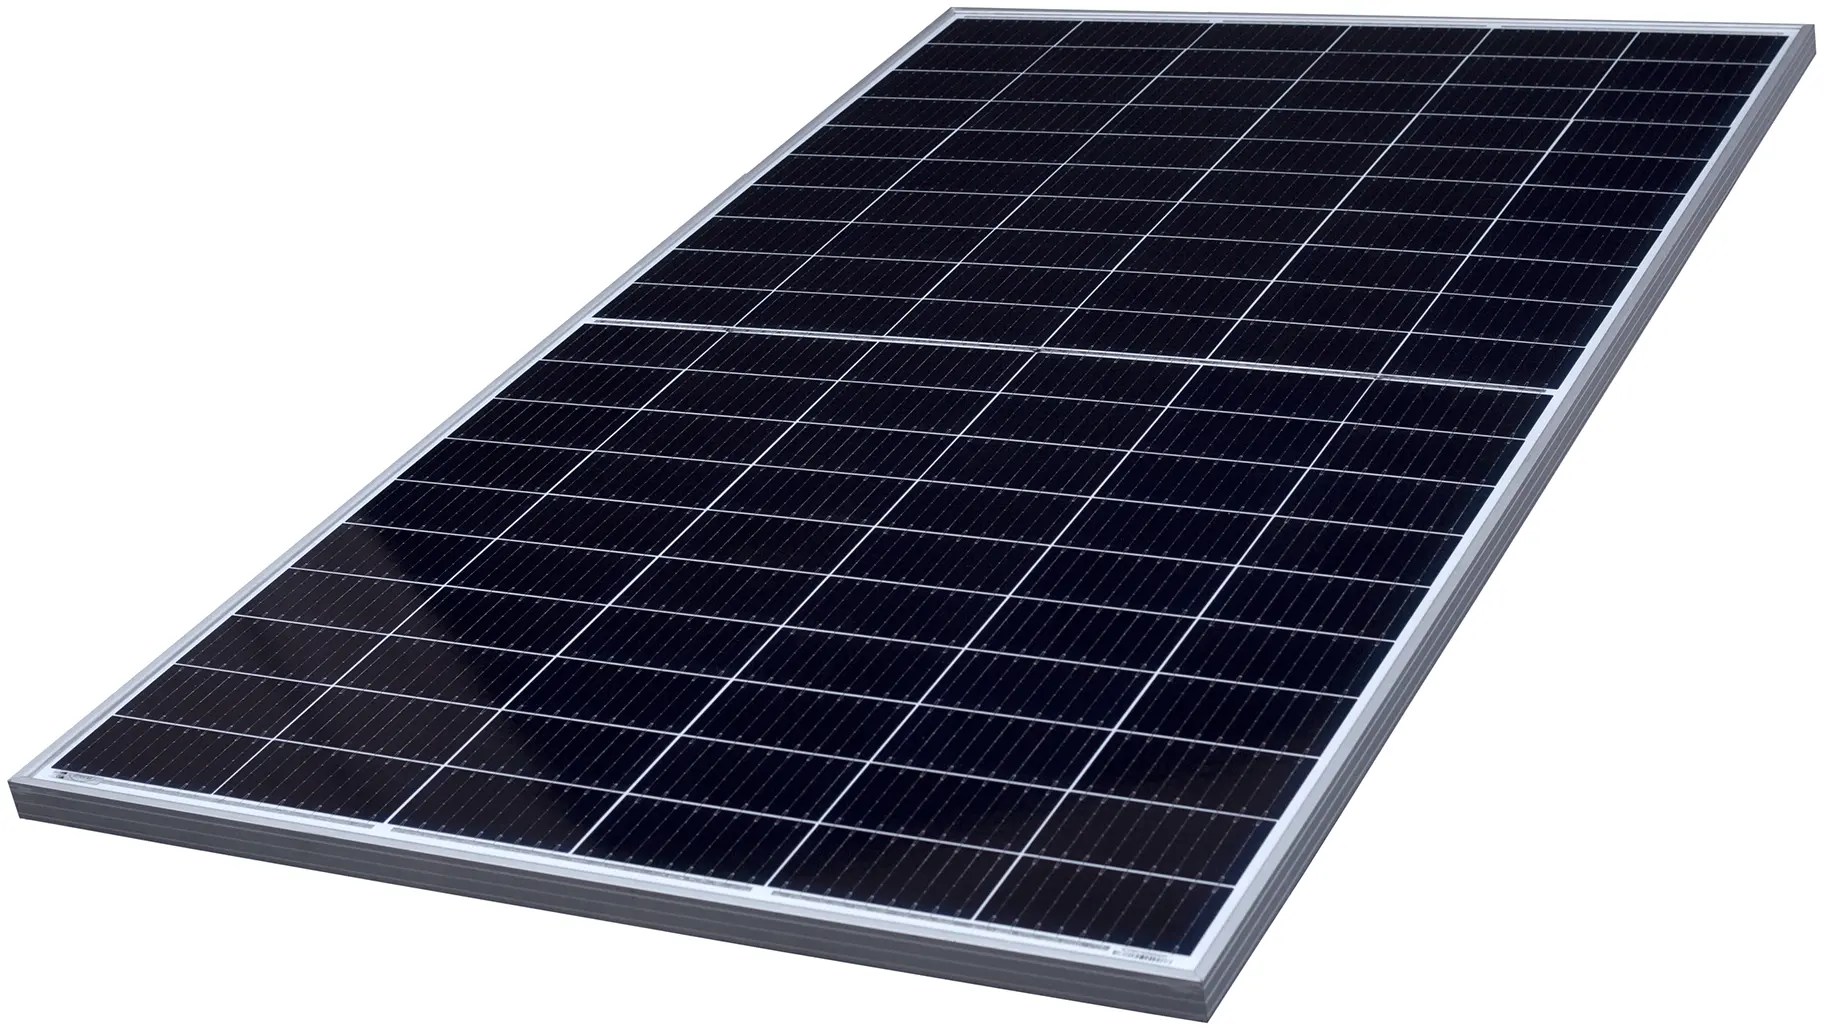 Longi Tier 1 370W himo4 LR4-60HPB mô-đun năng lượng mặt trời đơn tinh thể với chứng nhận TUV 355W 360W 365W 375W bảng điều khiển năng lượng mặt trời longi